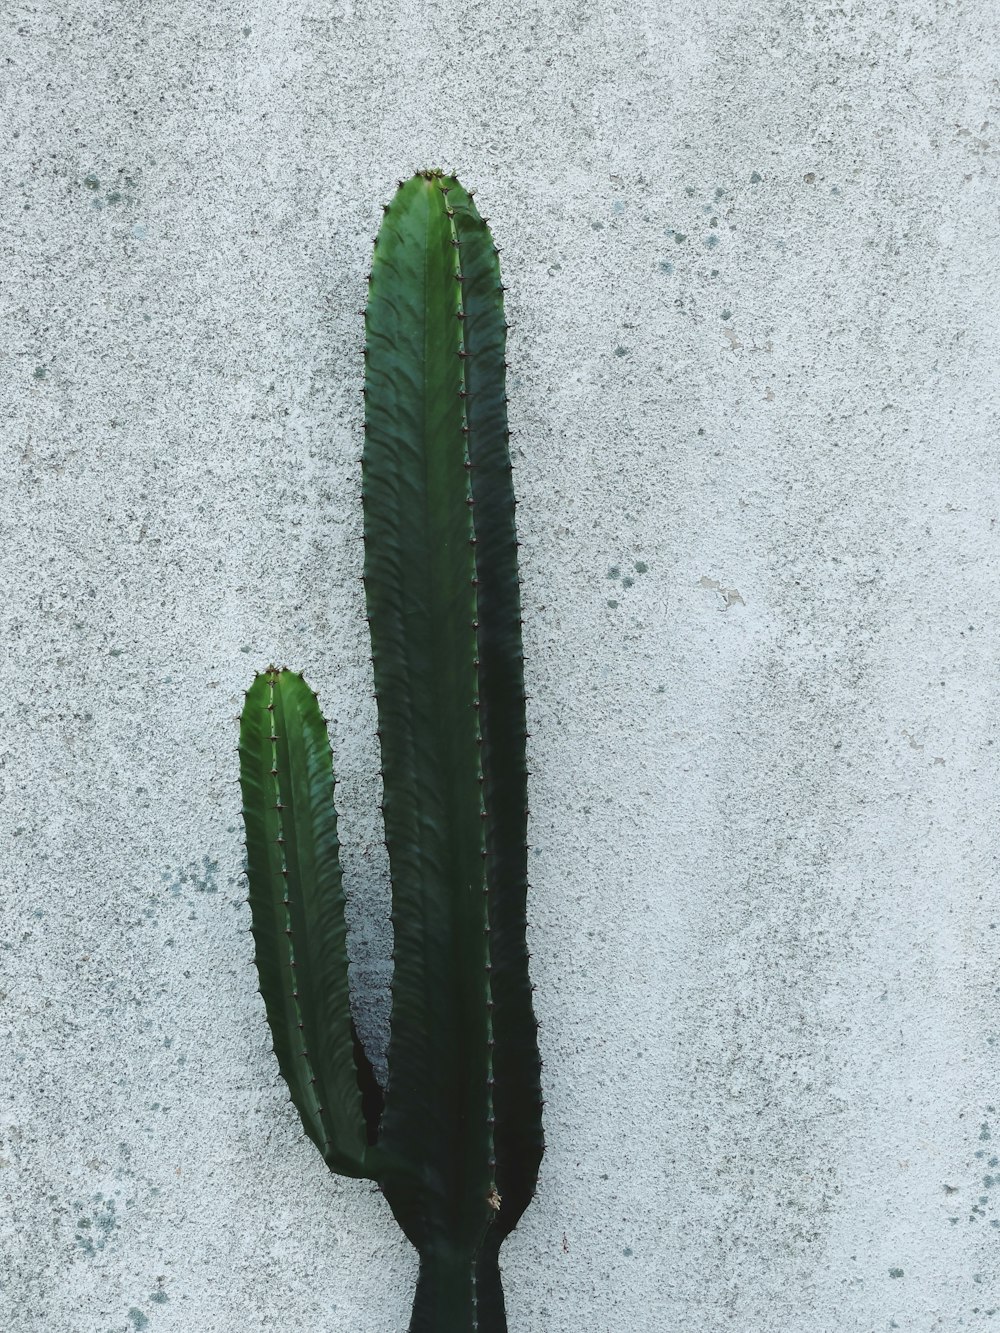 green cactus on gray concrete floor